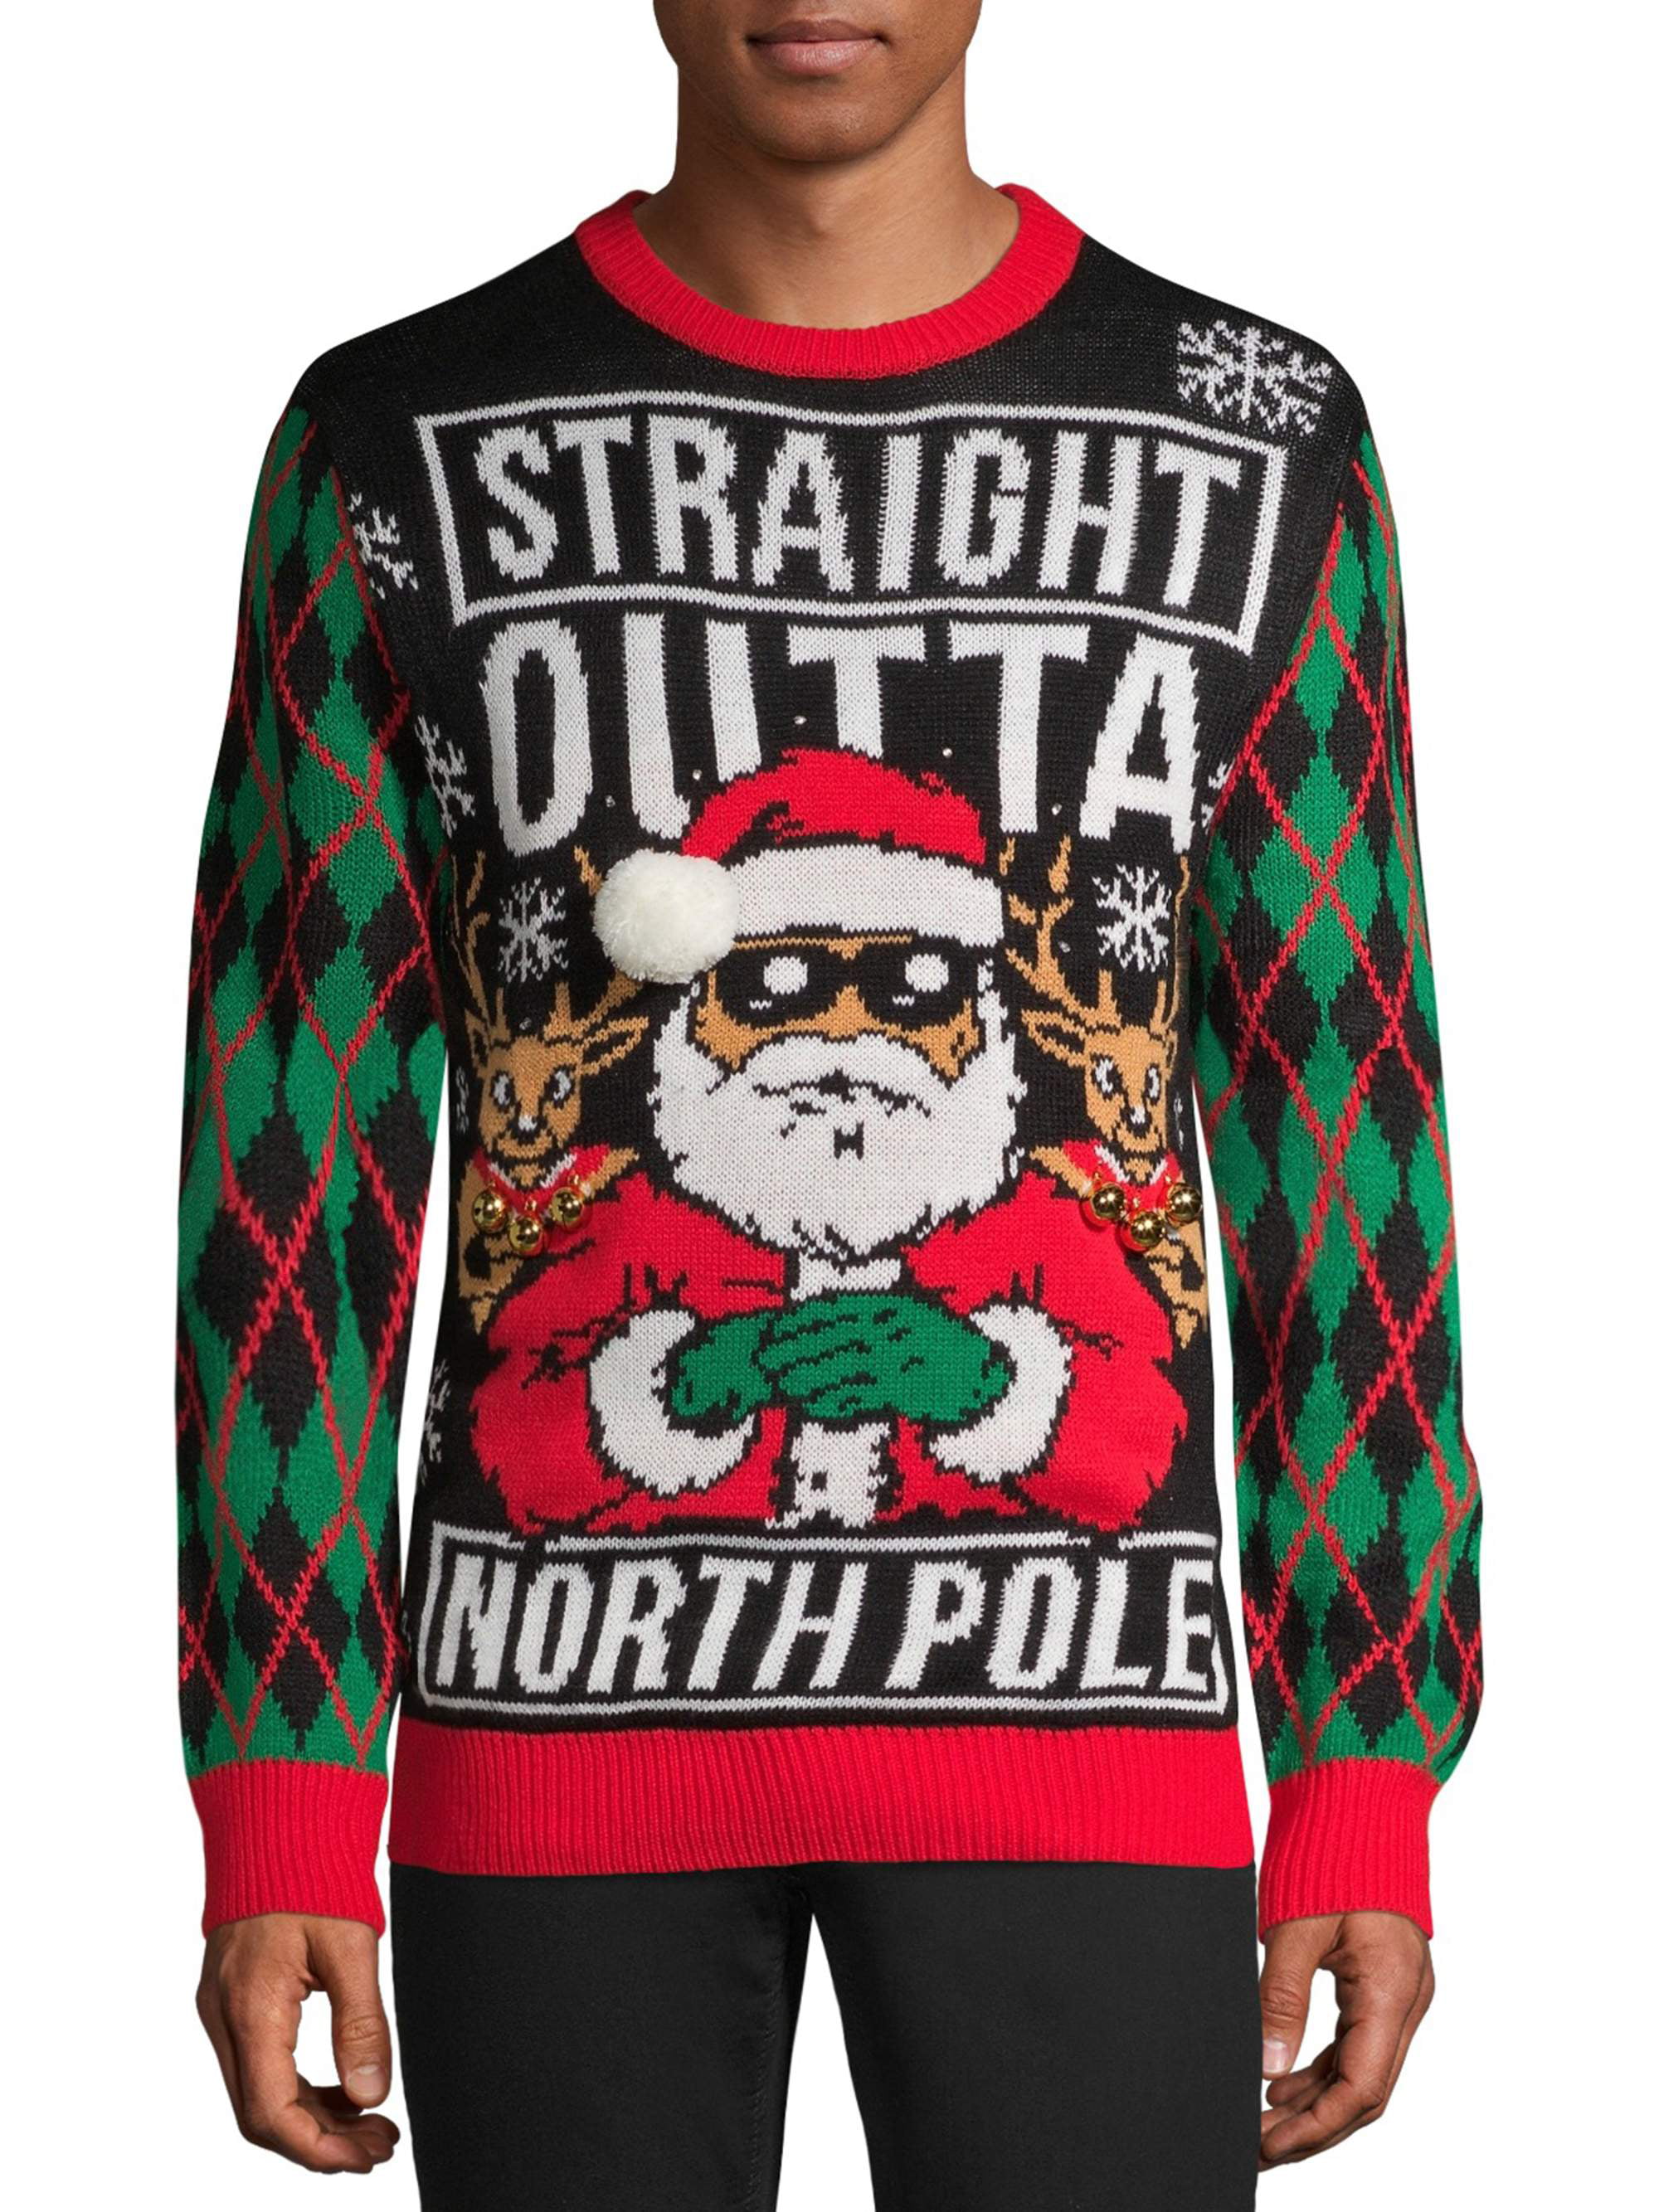 Hockey Ugly Christmas Sweater Style Short-Sleeve Unisex T-Shirt